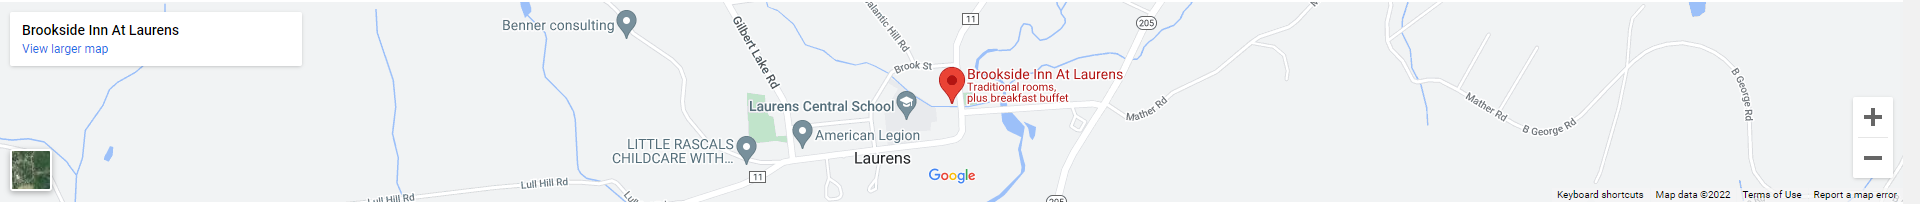 Brookside Inn at Laurens